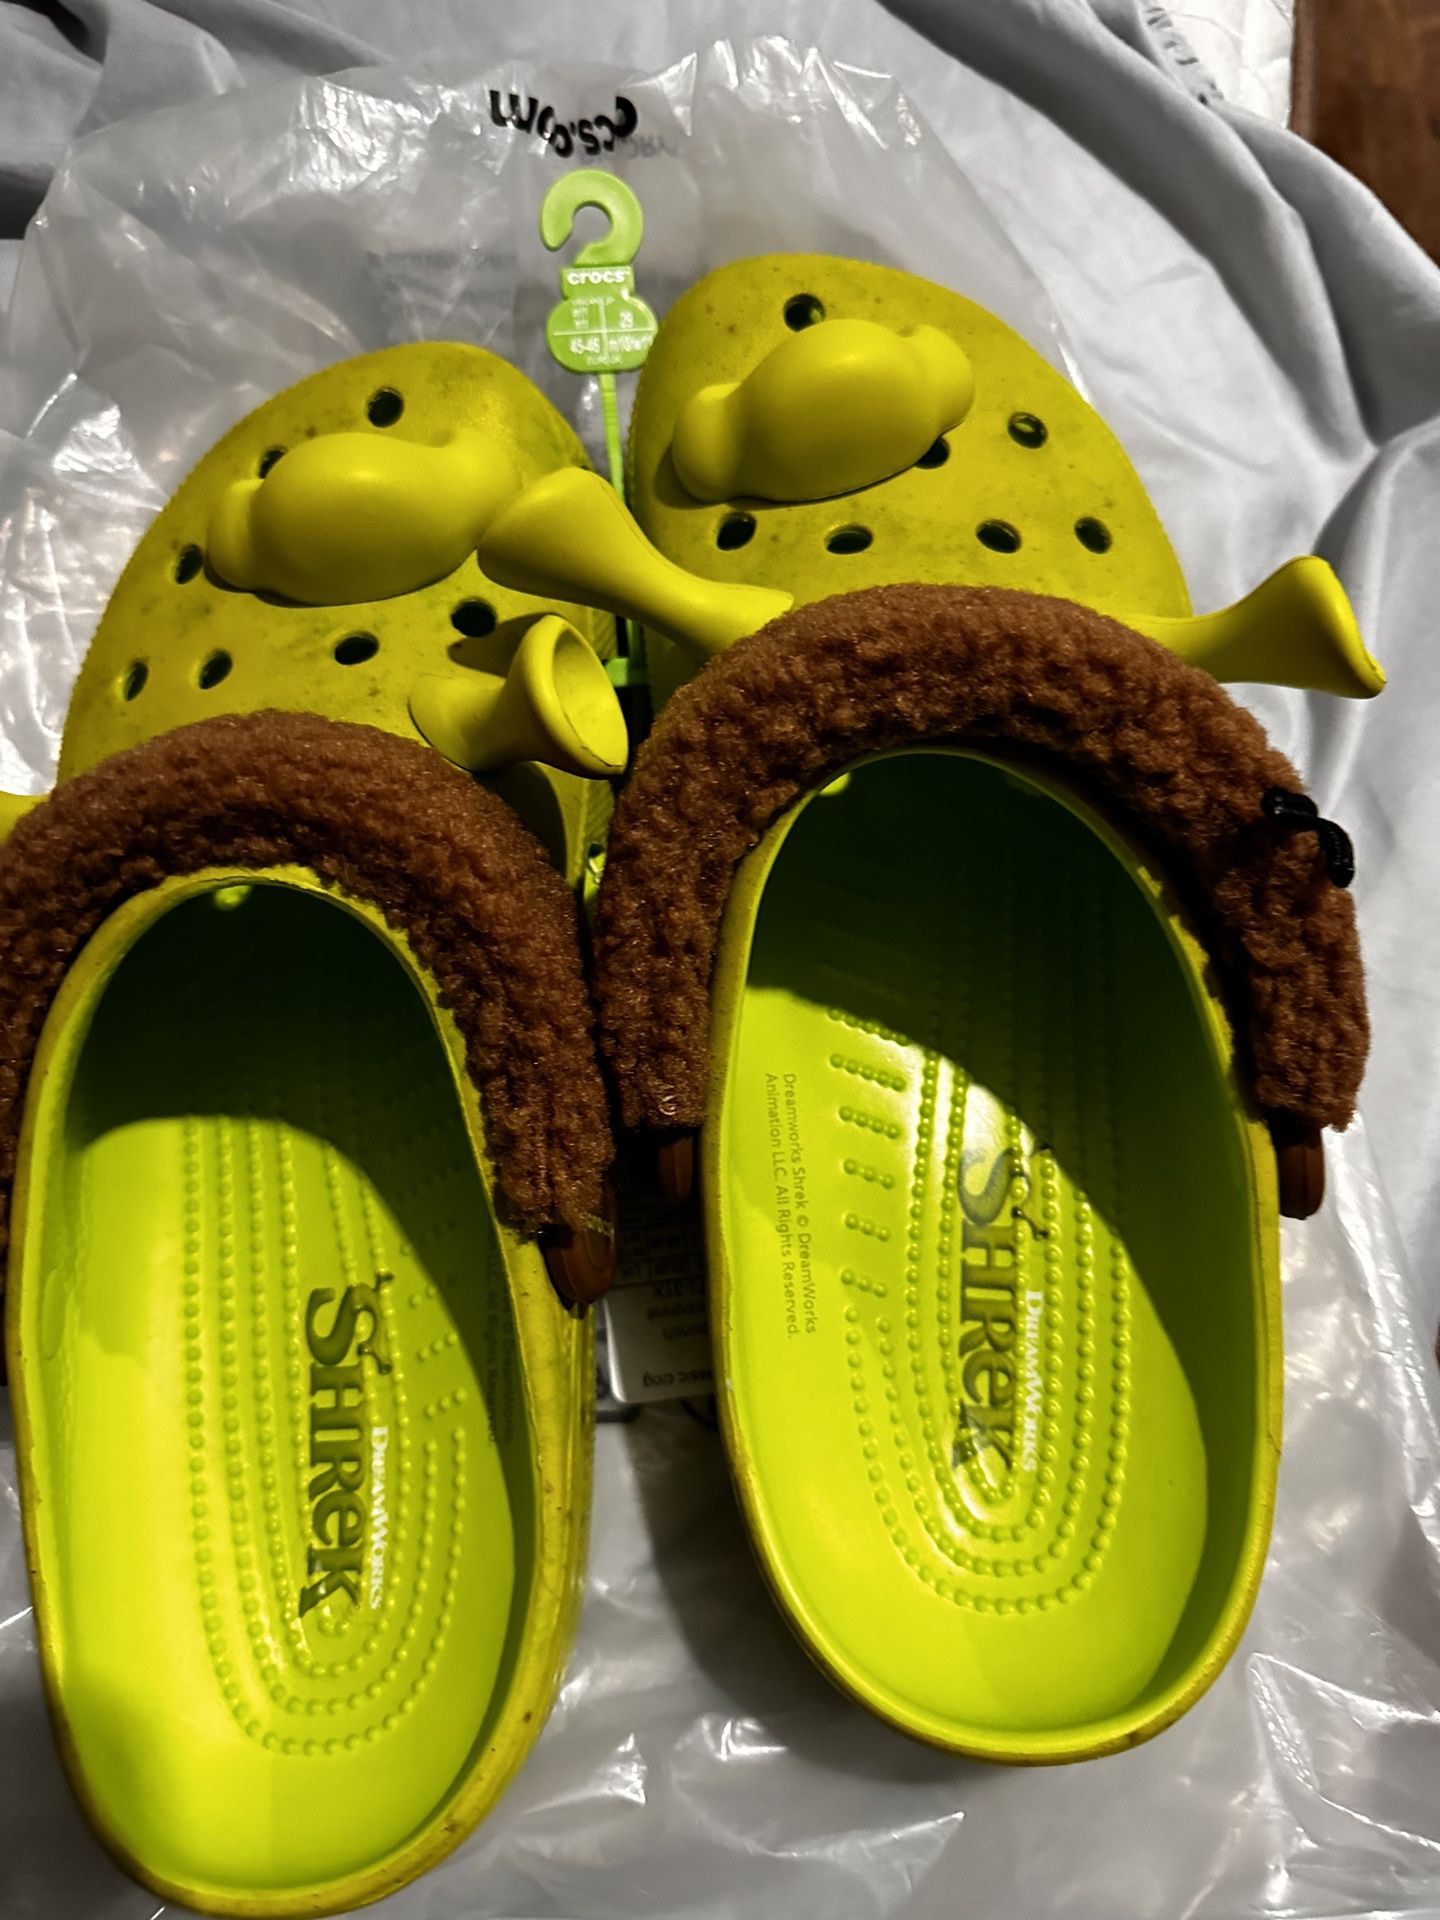 Crocs Shrek 120 Or Best Offer. Need Them Gone Asap.